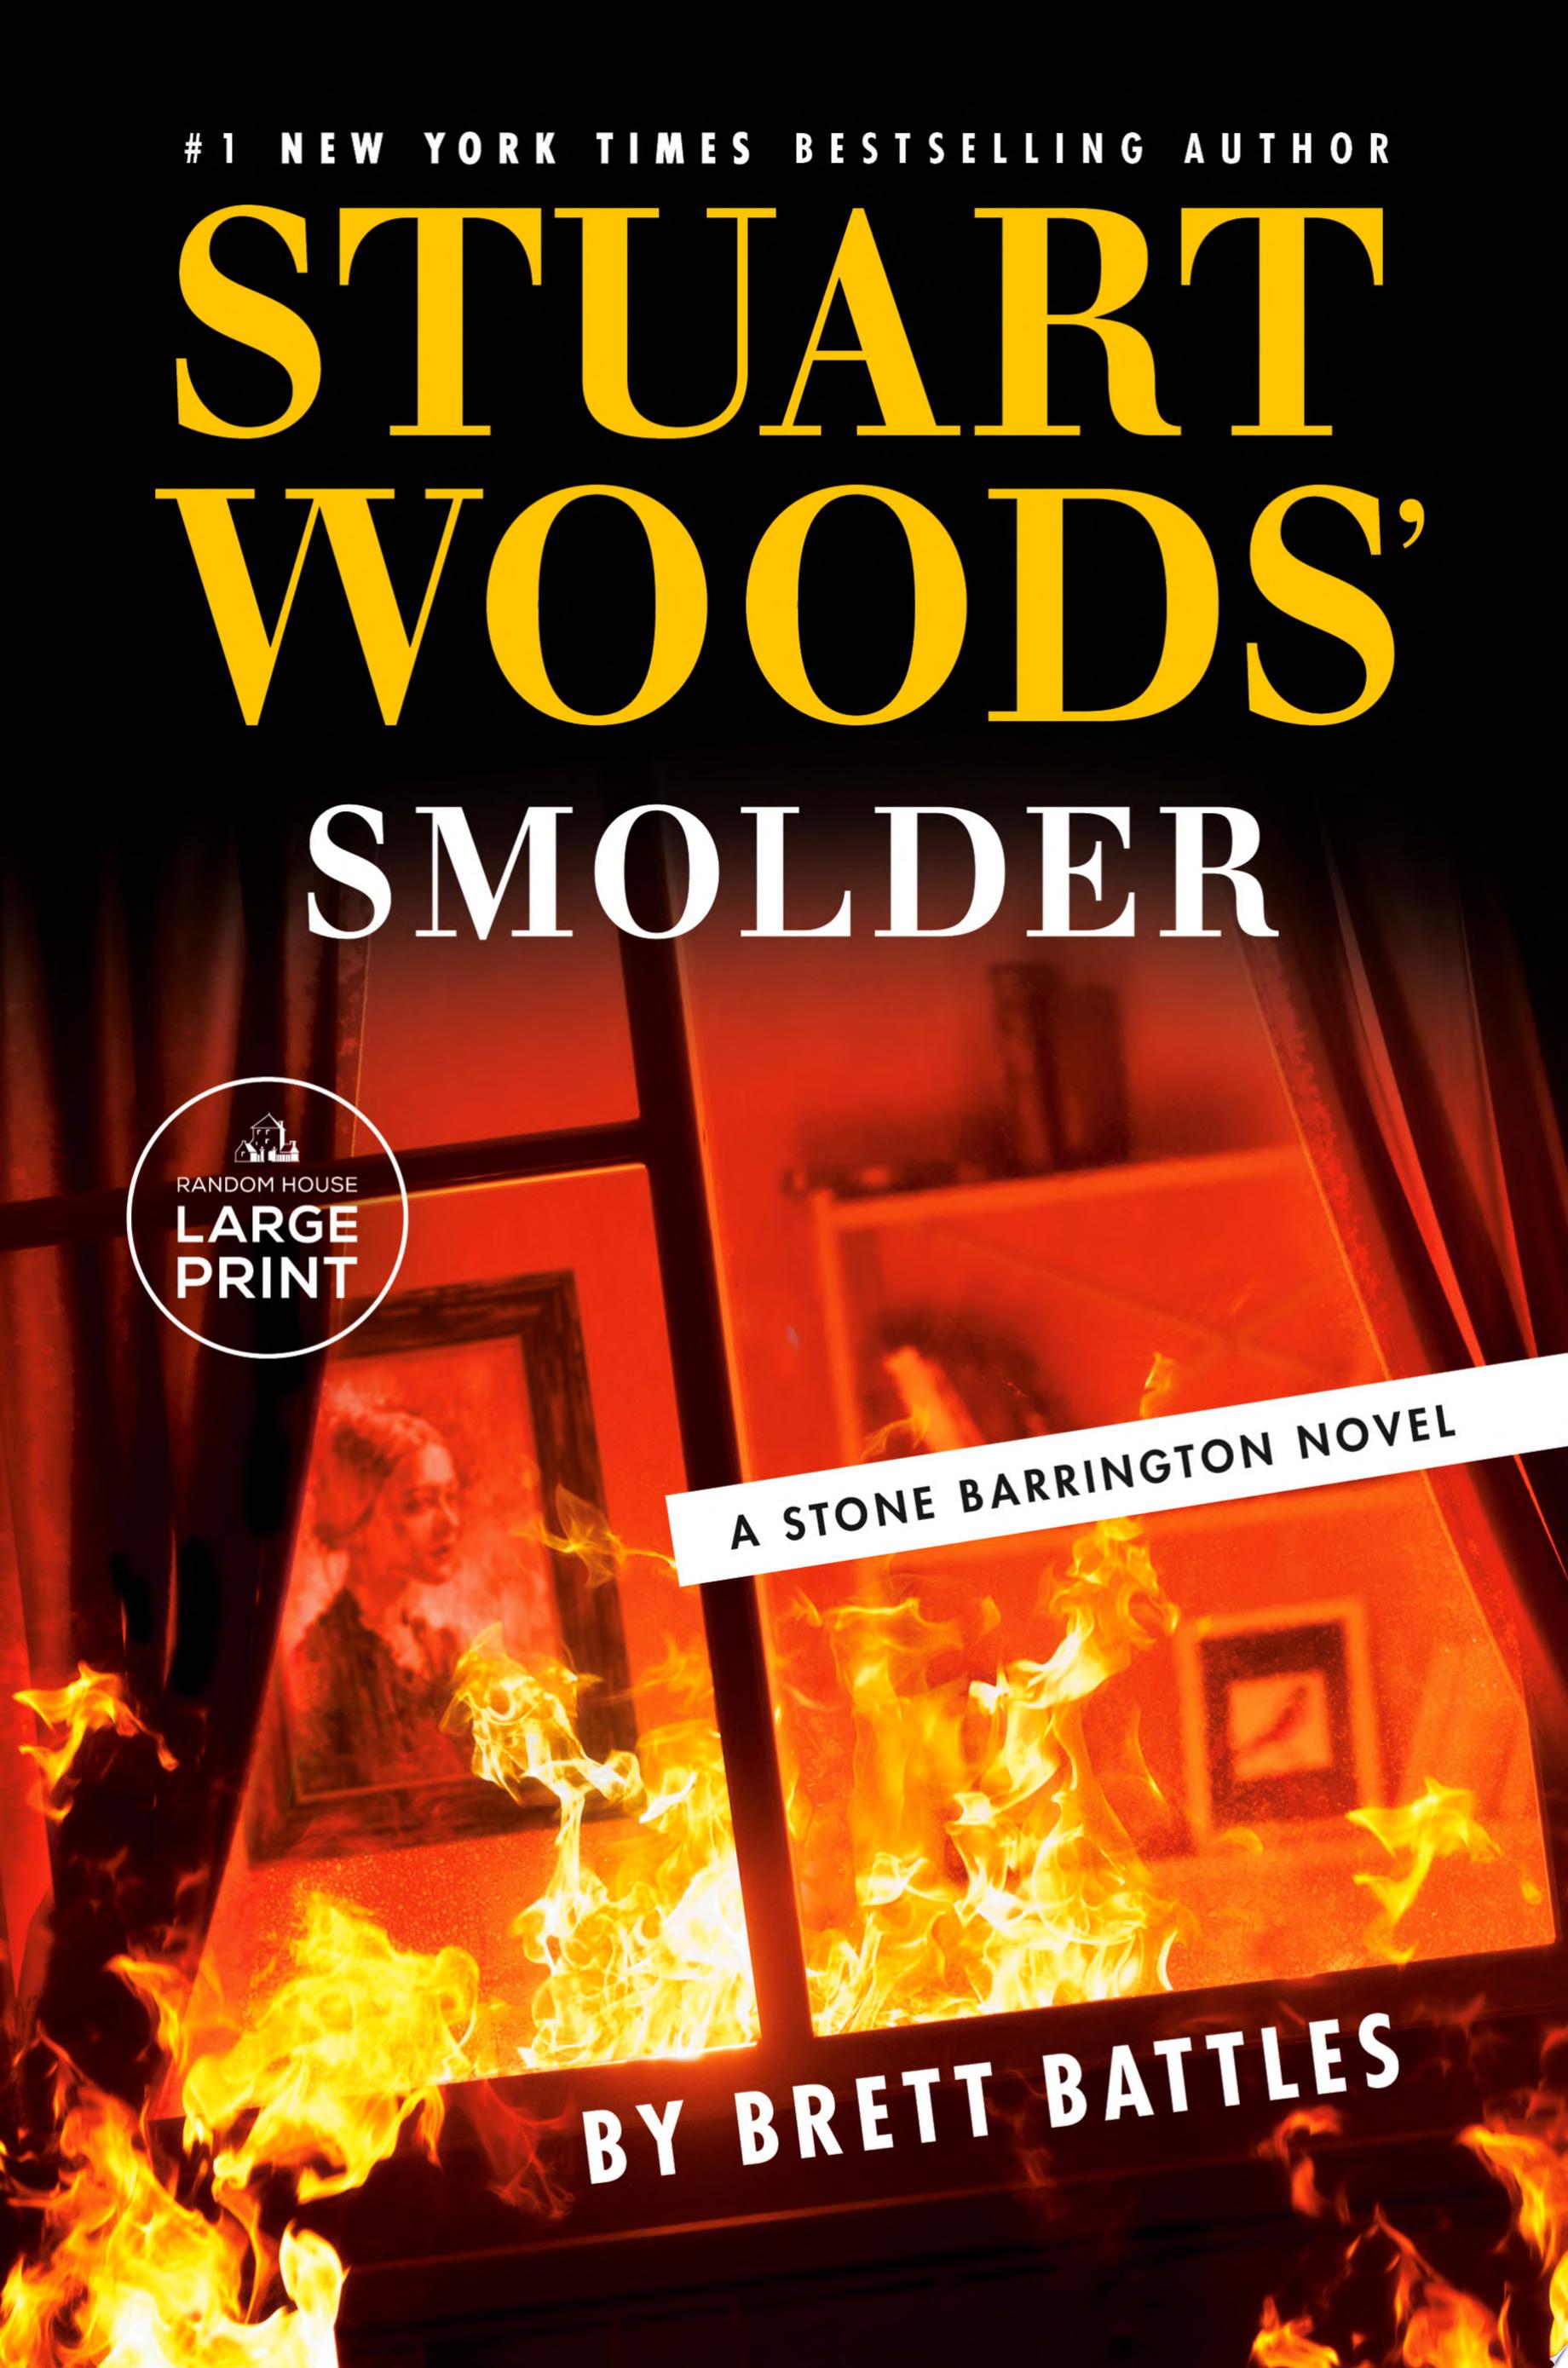 Image for "Stuart Woods' Smolder"